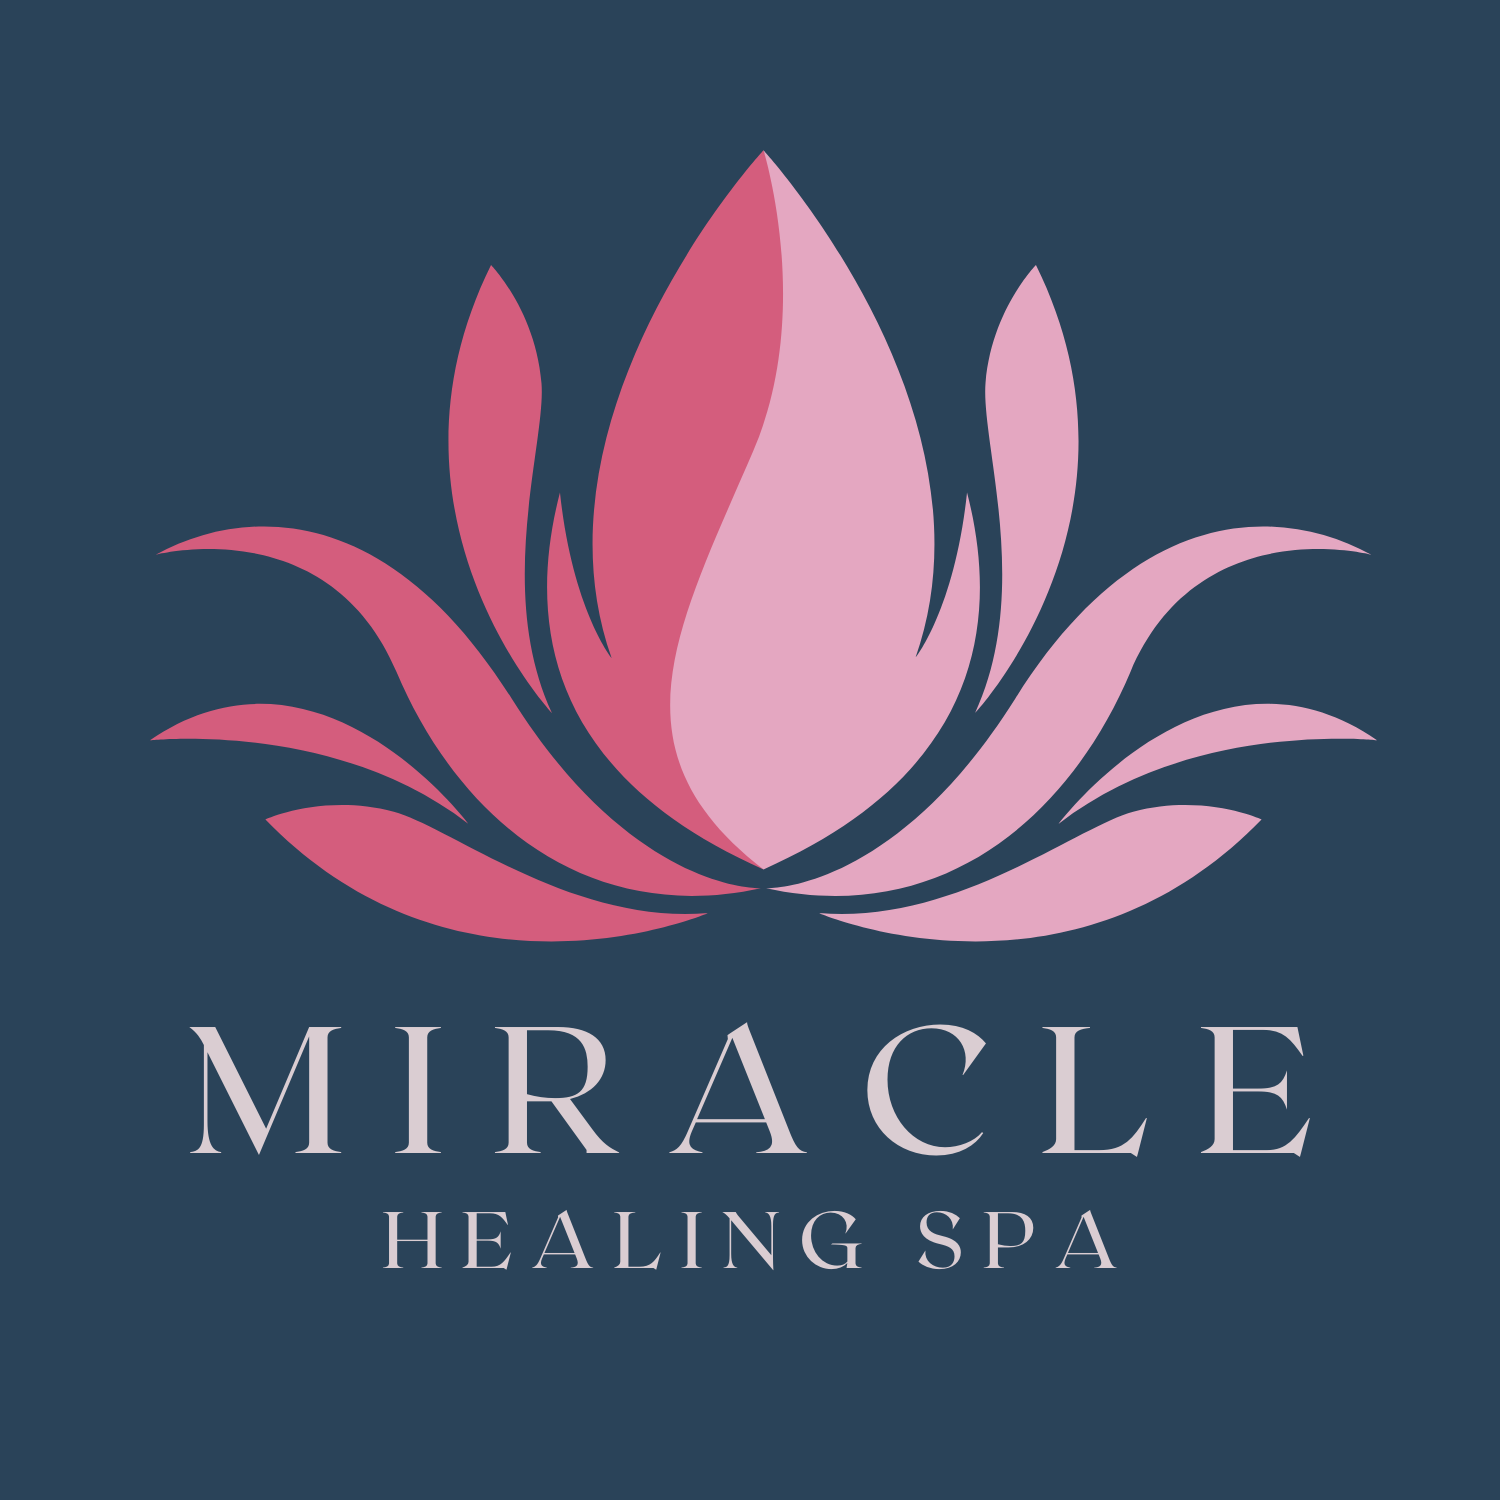 Miracle Healing Spa